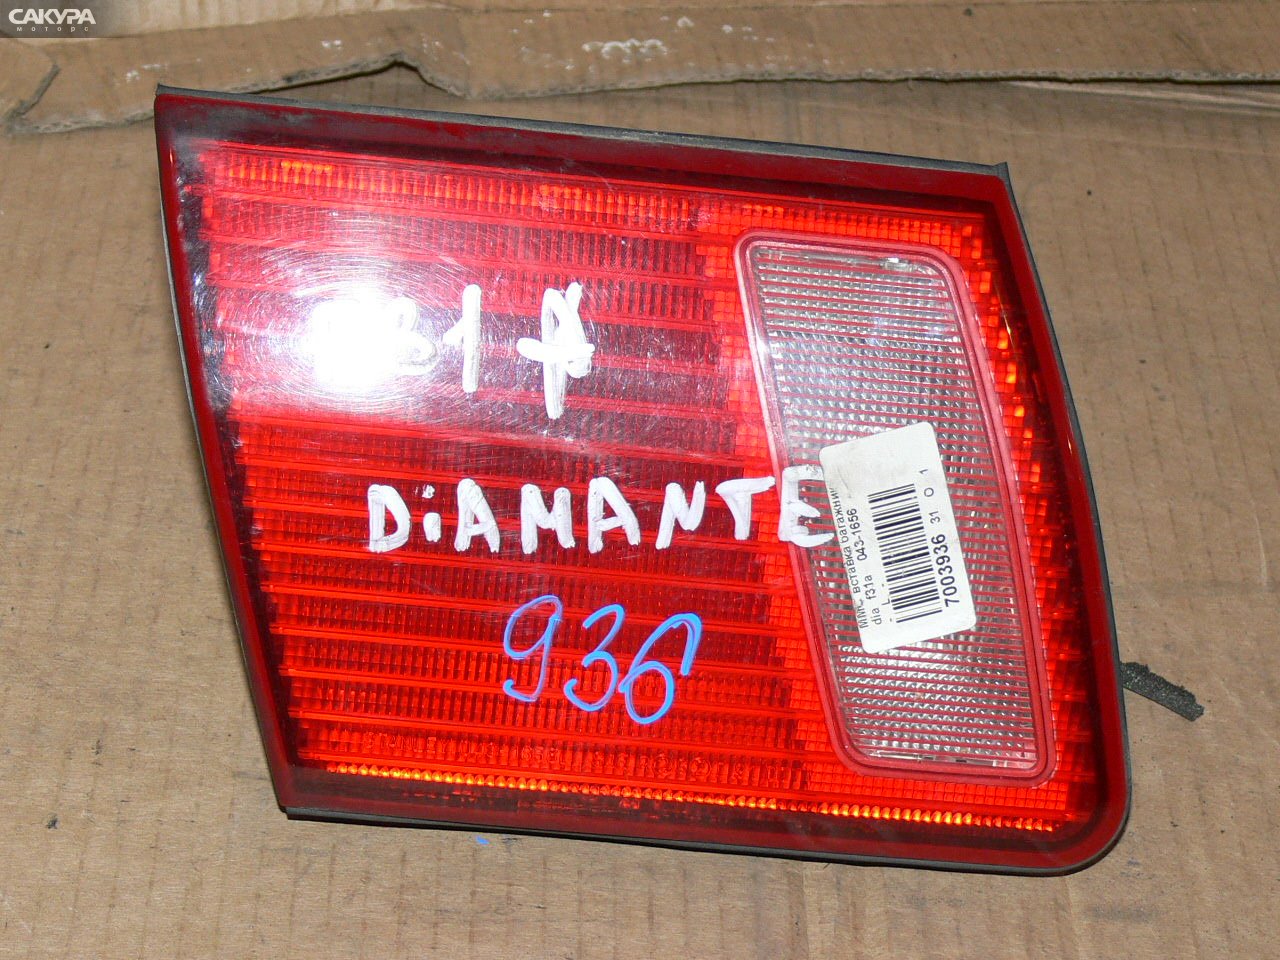 Фонарь вставка багажника левый Mitsubishi Diamante F31A 043-1656: купить в Сакура Иркутск.